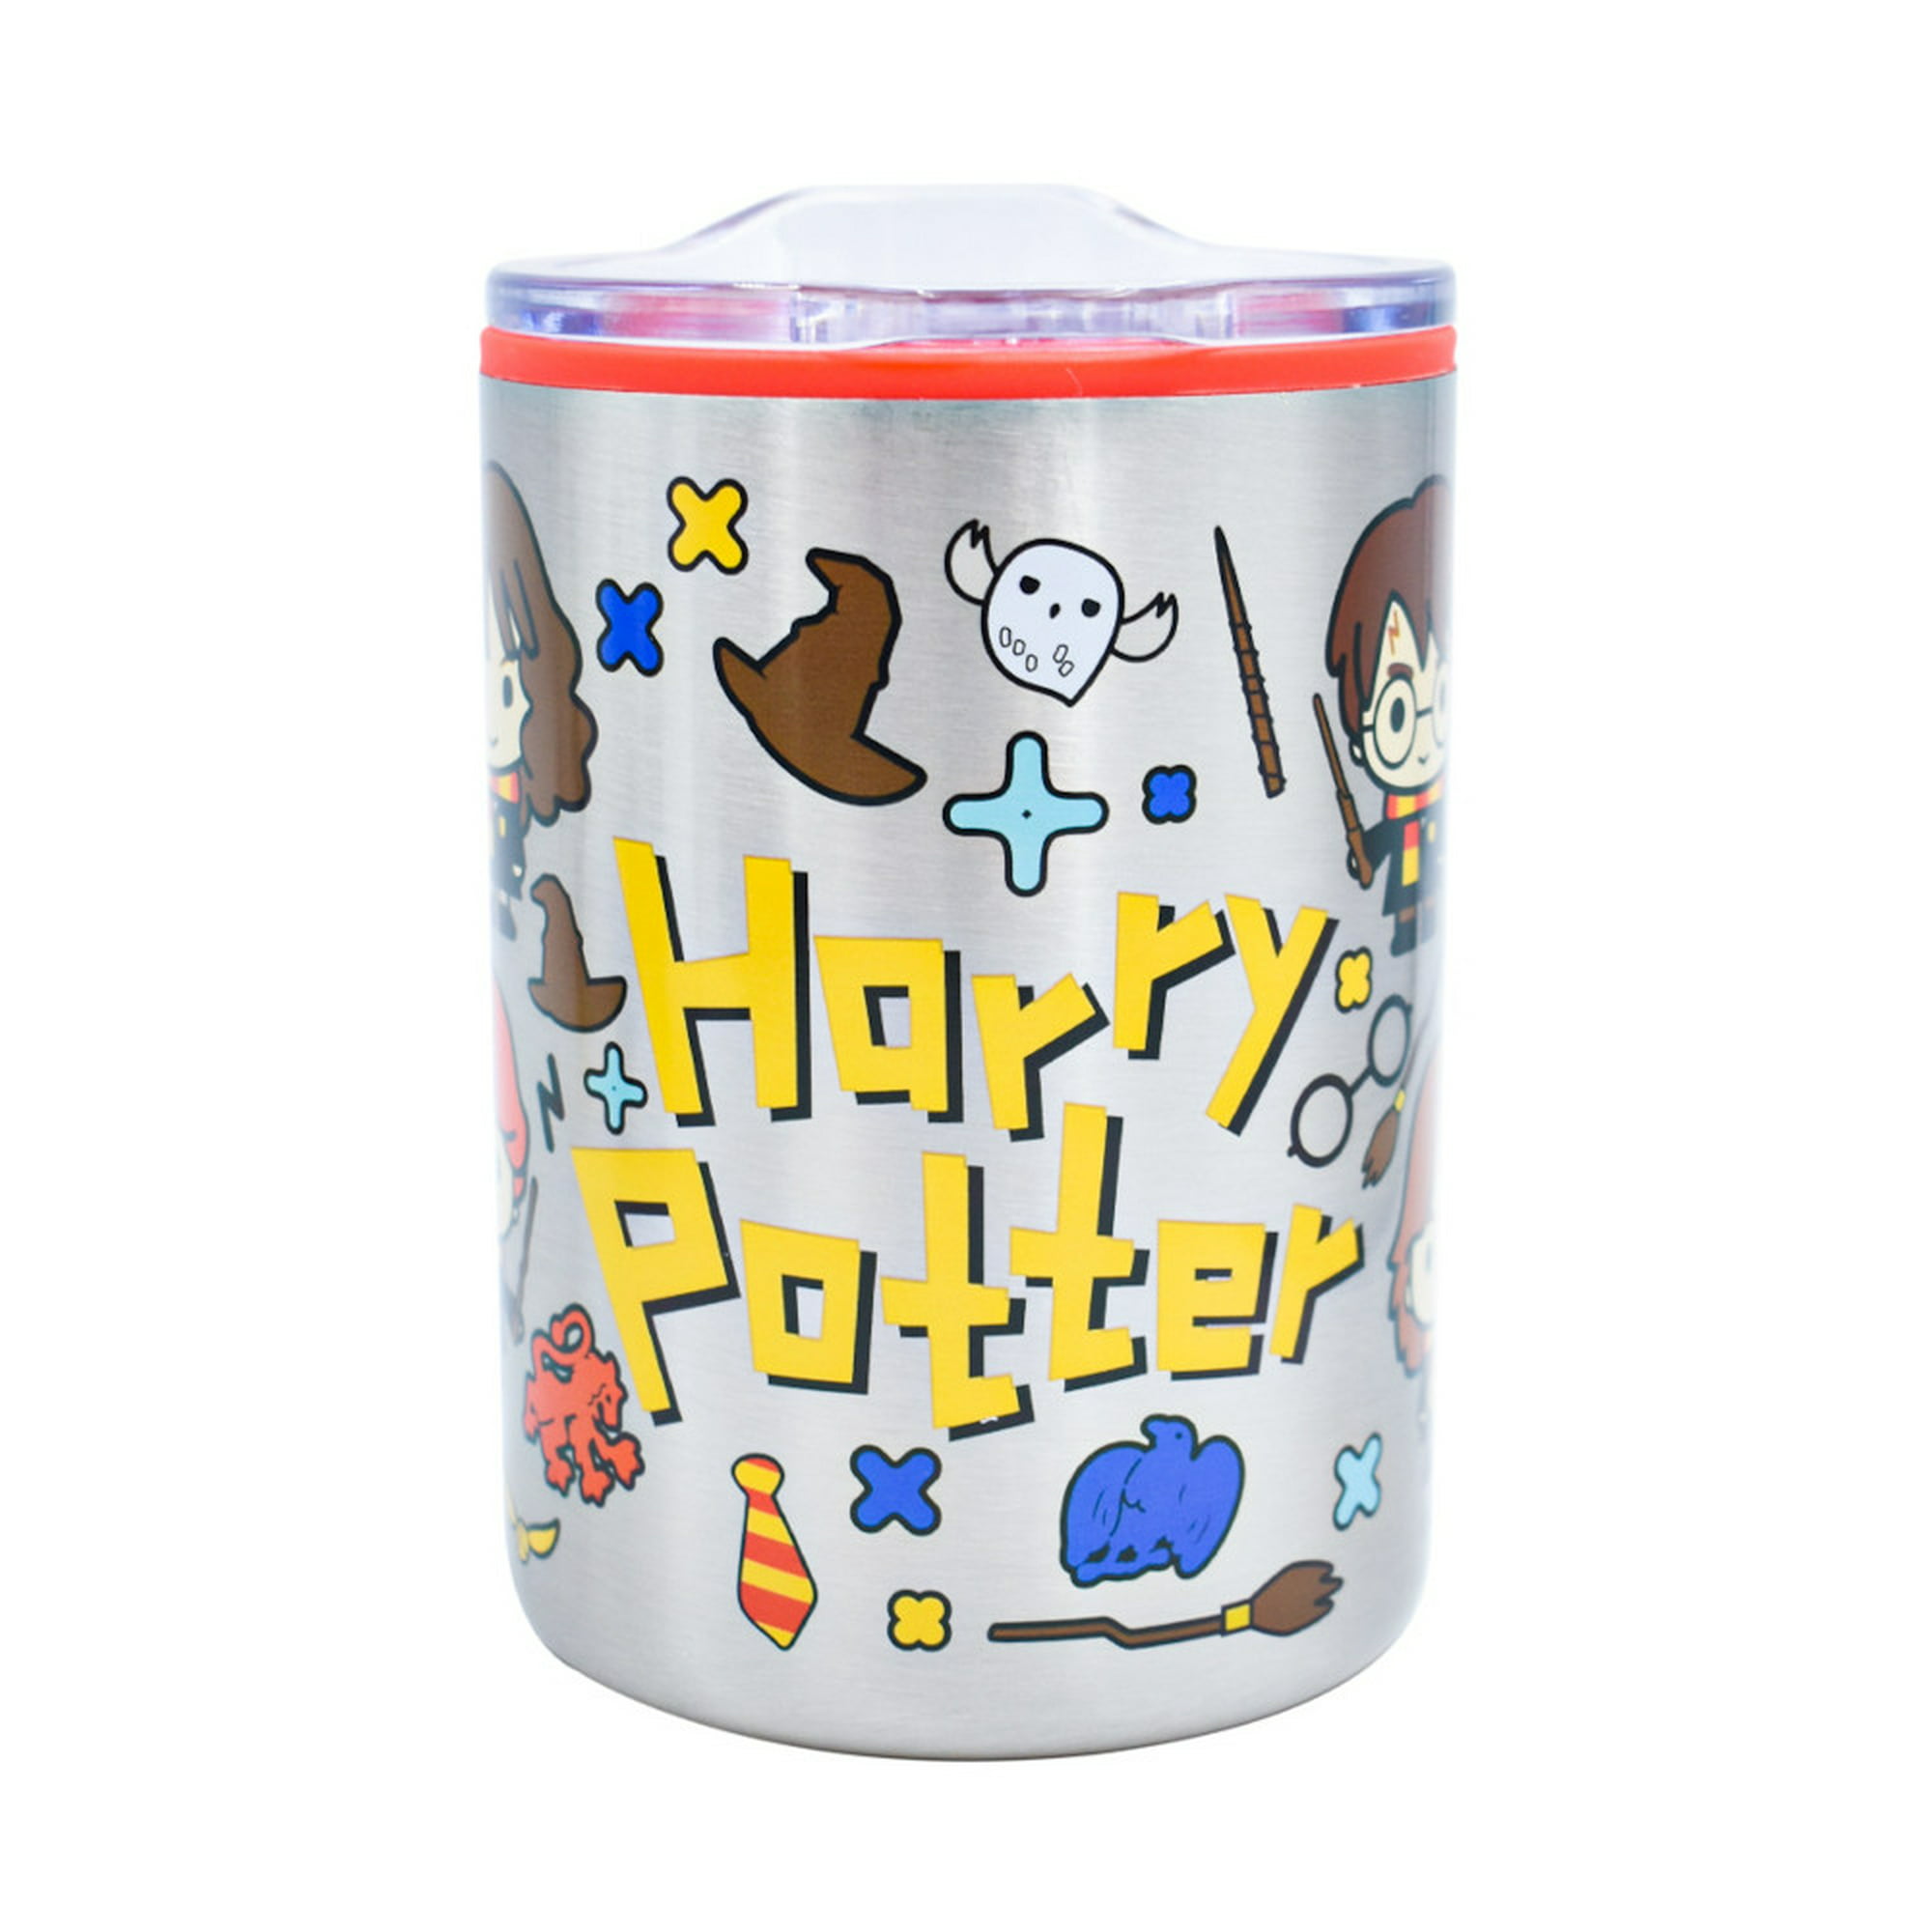 Termo café acero termo inoxidable Harry Potter 380 ml con asa Hogwarts